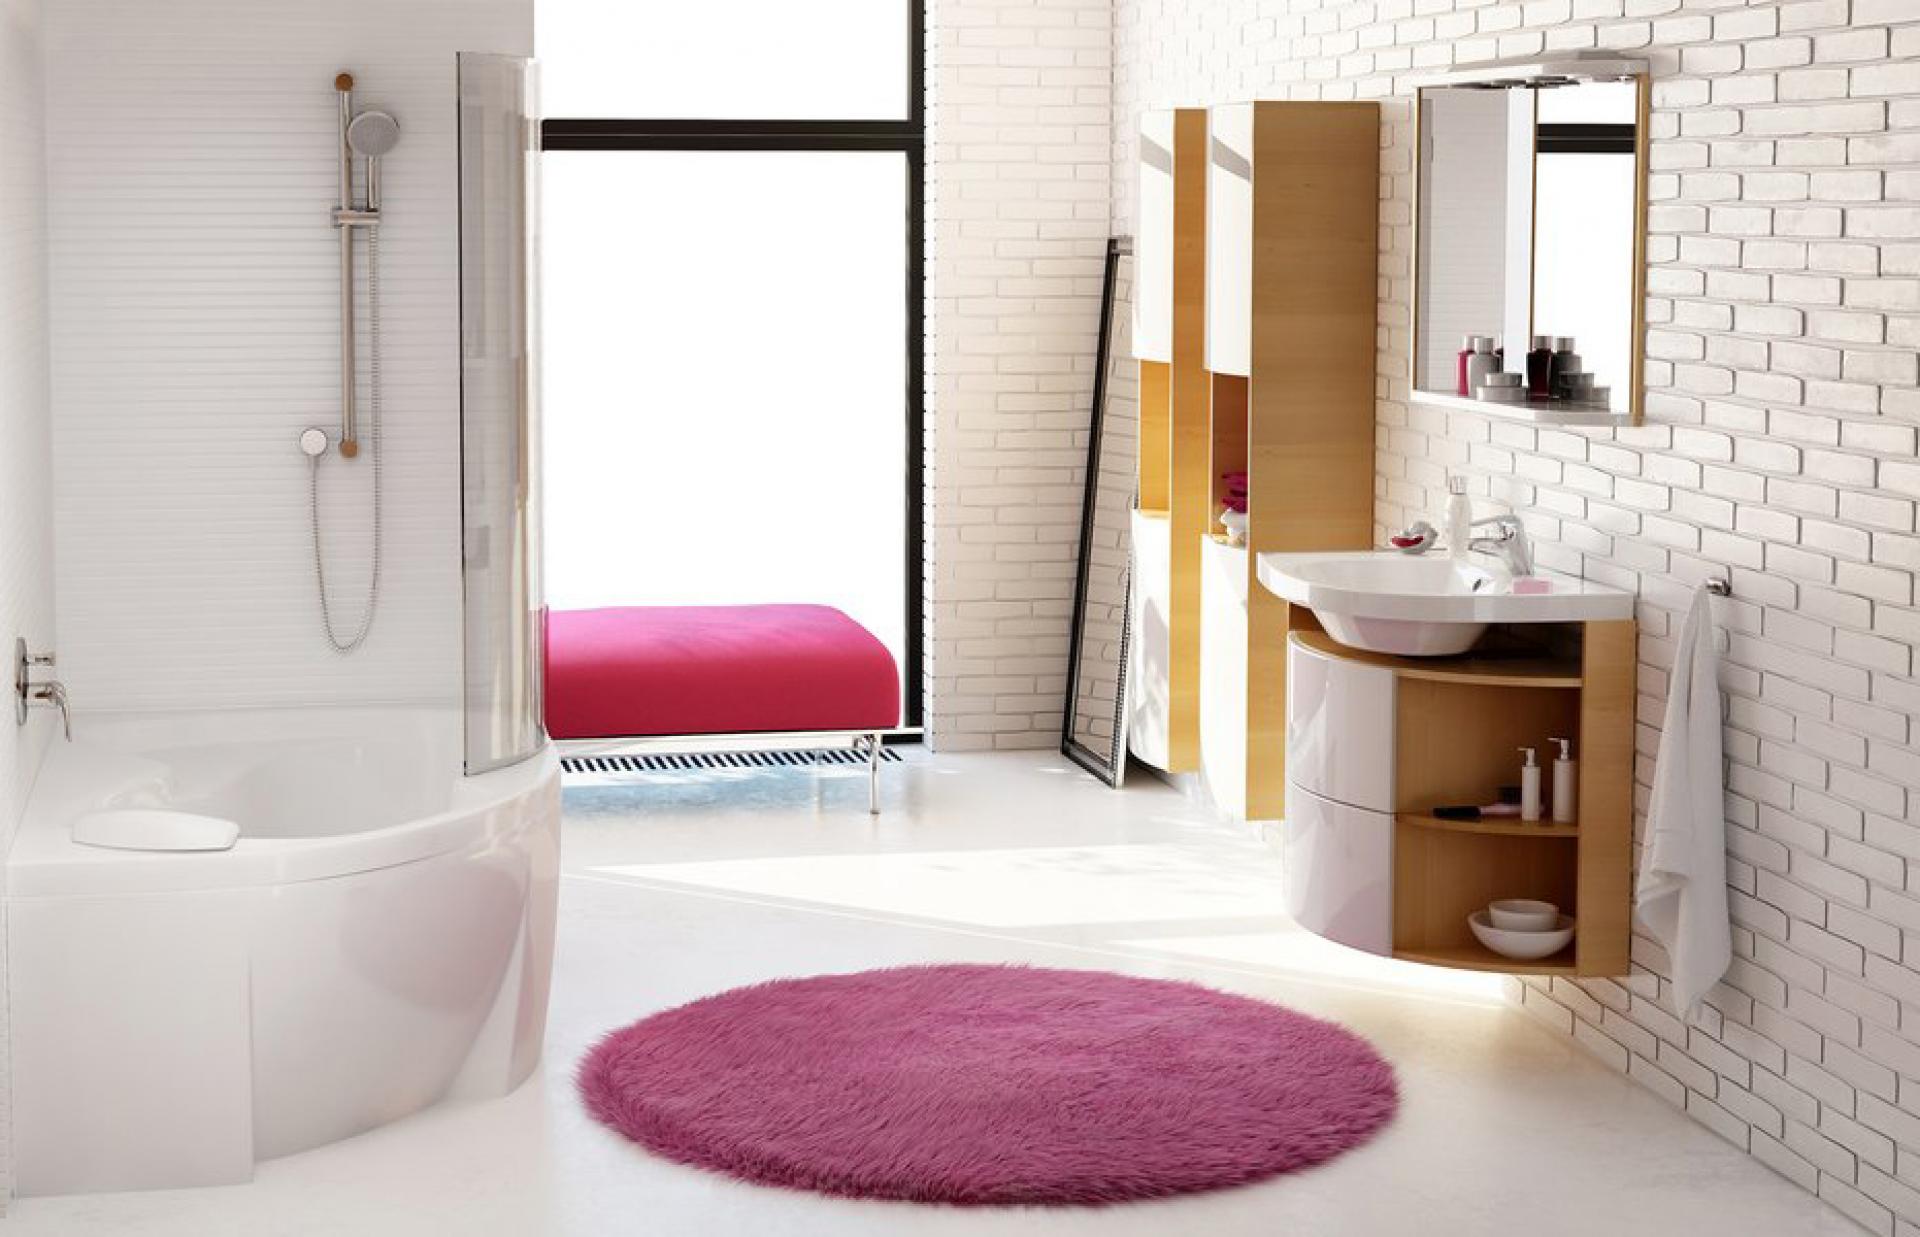 Мебель для ванной Ravak Rosa Comfort береза/белая L